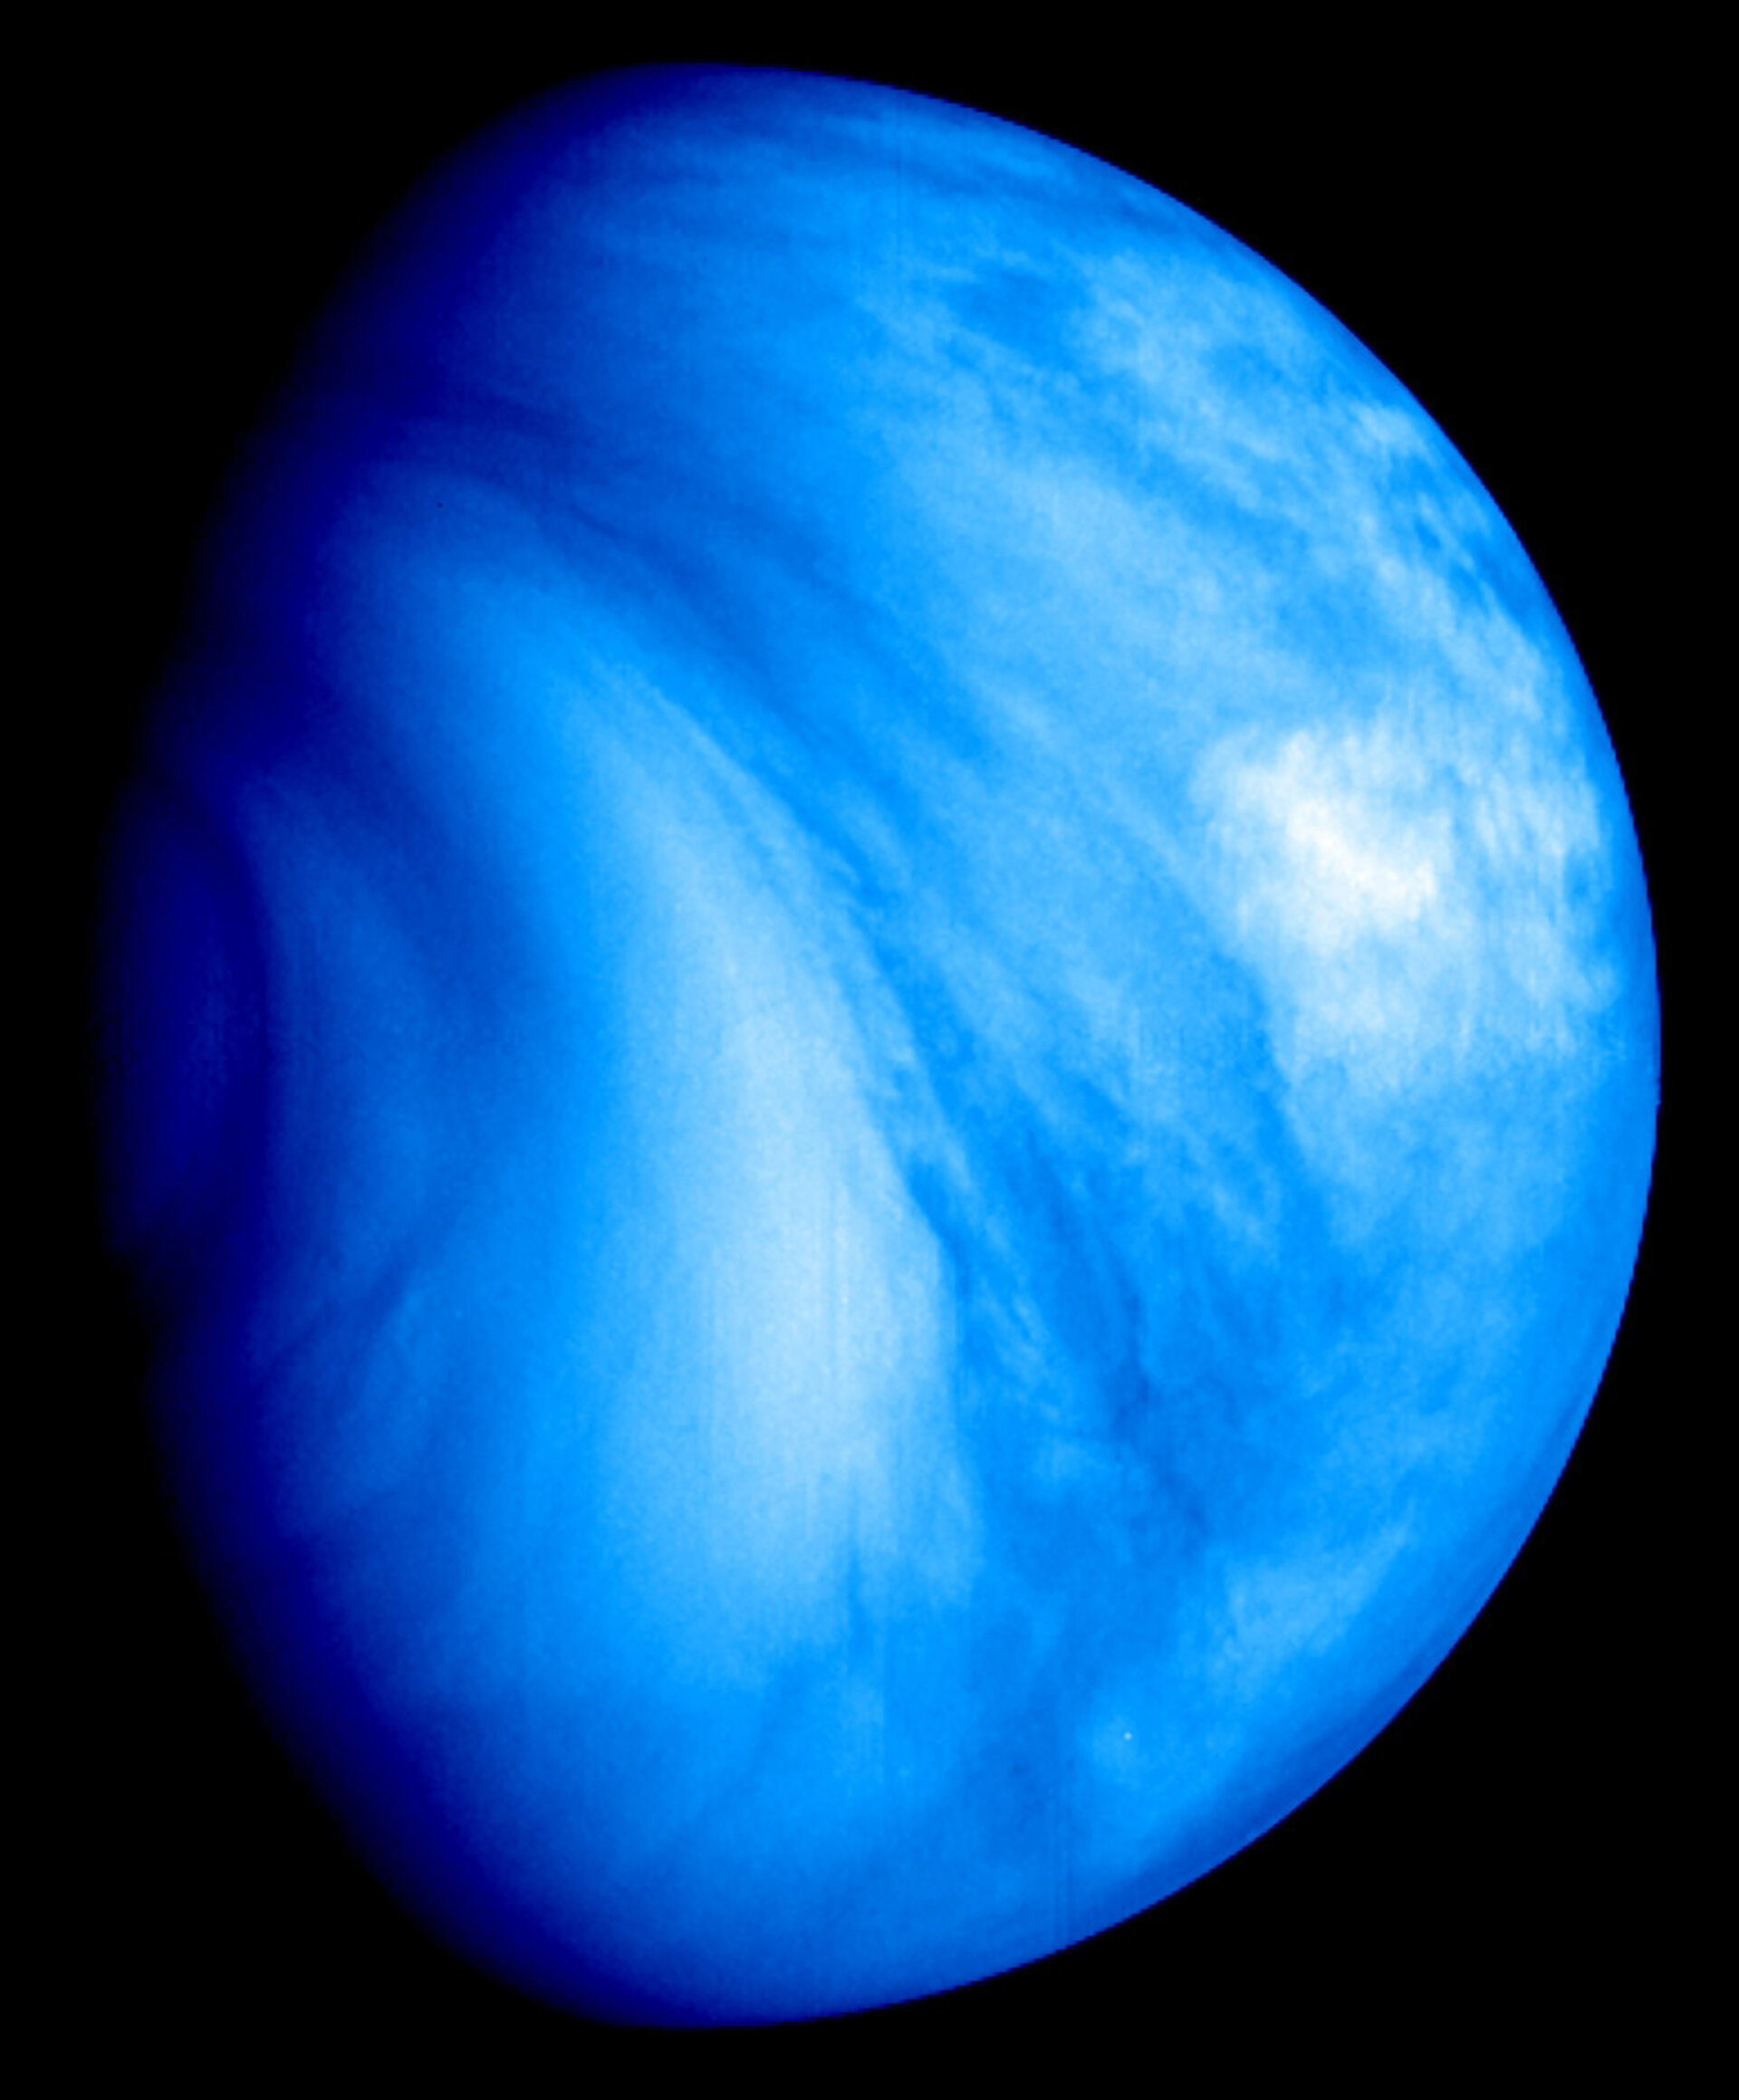 Opname van het zuidelijke halfrond van Venus (in valse kleuren) door de Venus Monitoring Camera (VMC) aan boord van Venus Express